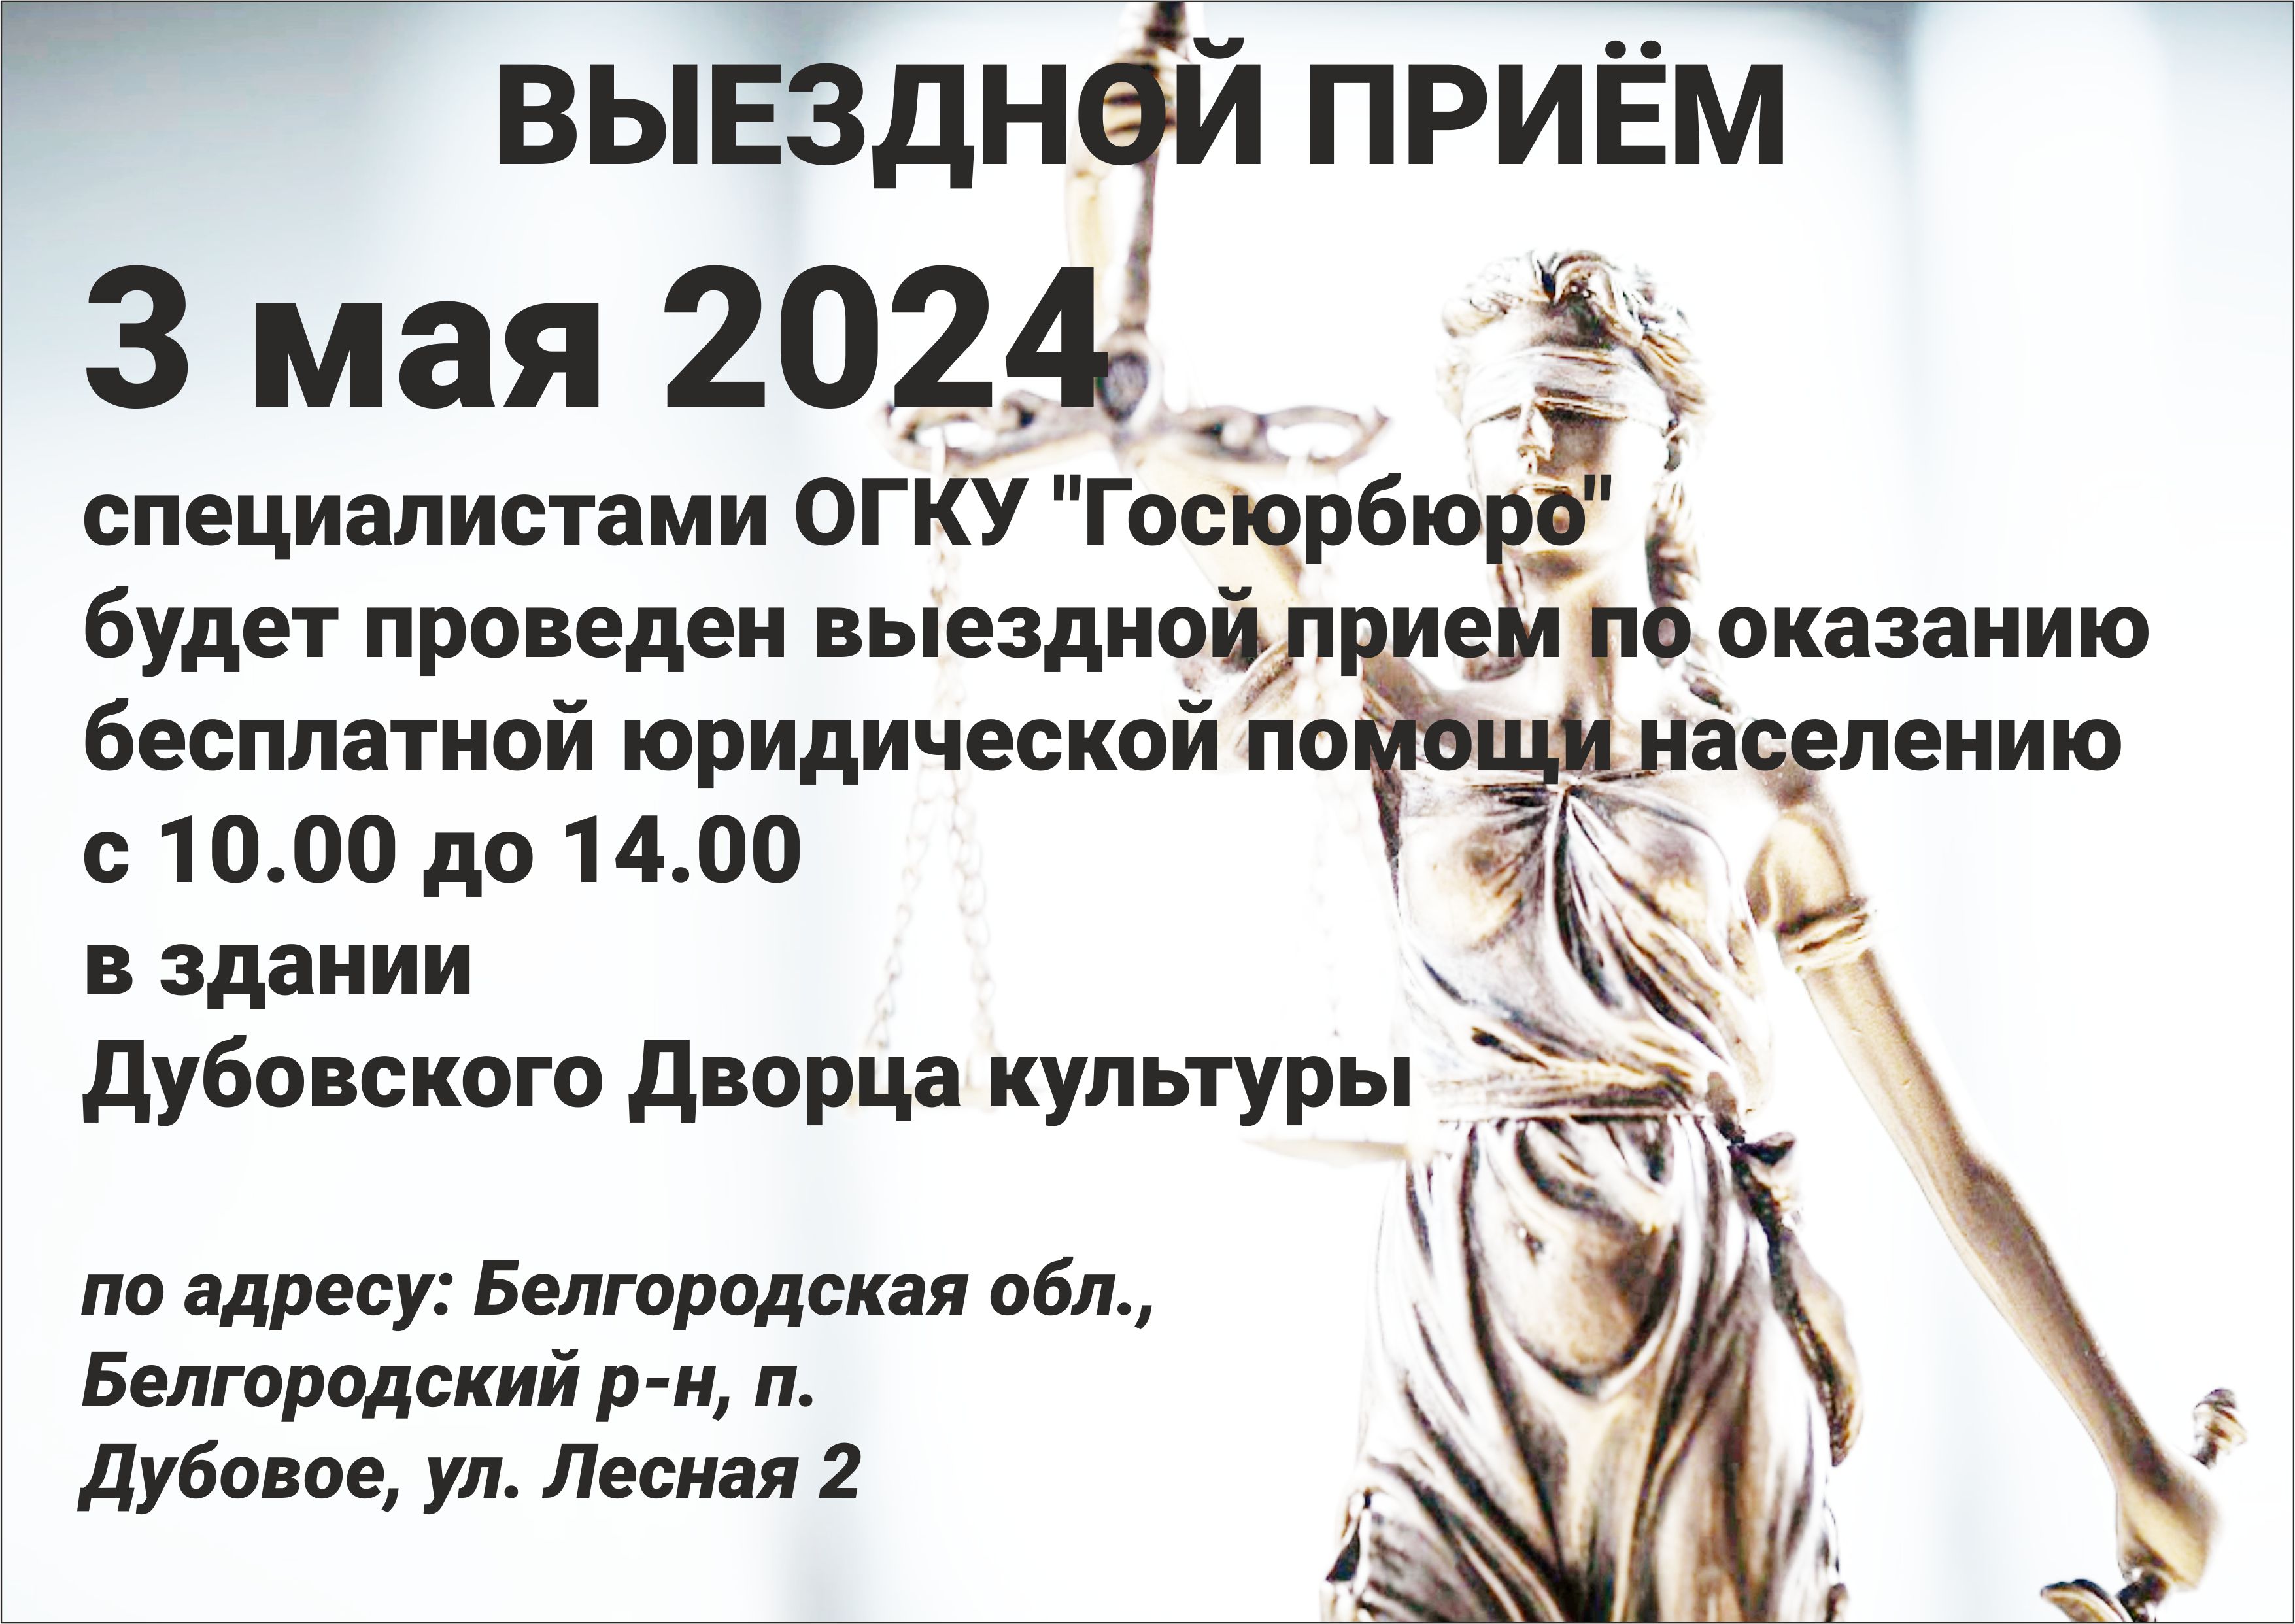 !ВЫЕЗДНОЙ ПРИЁМ! 3 мая 2024 специалистами ОГКУ &quot;Госюрбюро&quot; с 10.00 до 14.00 в здании Дубовского Дворца культуры.